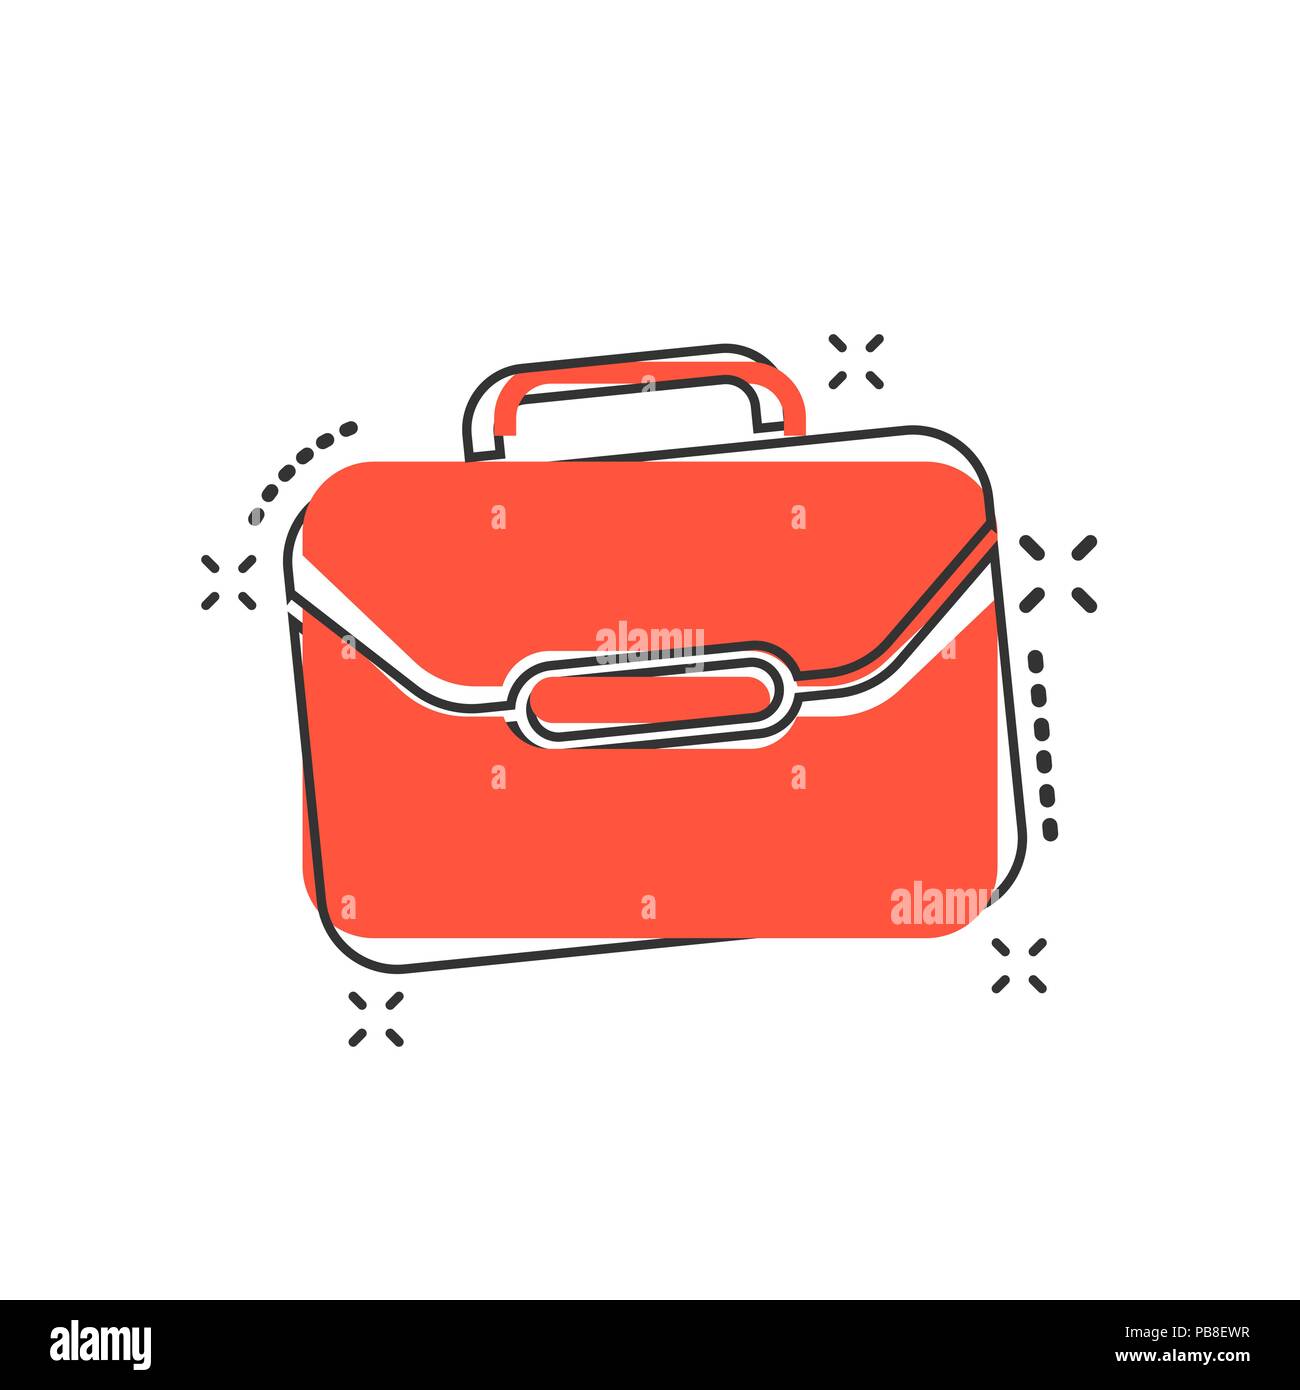 Vektor cartoon Koffer Symbol im Comic-stil. Gepäck Tasche zeichen Abbildung  Piktogramm. Diplomat bei Business splash Wirkung Konzept Stock-Vektorgrafik  - Alamy